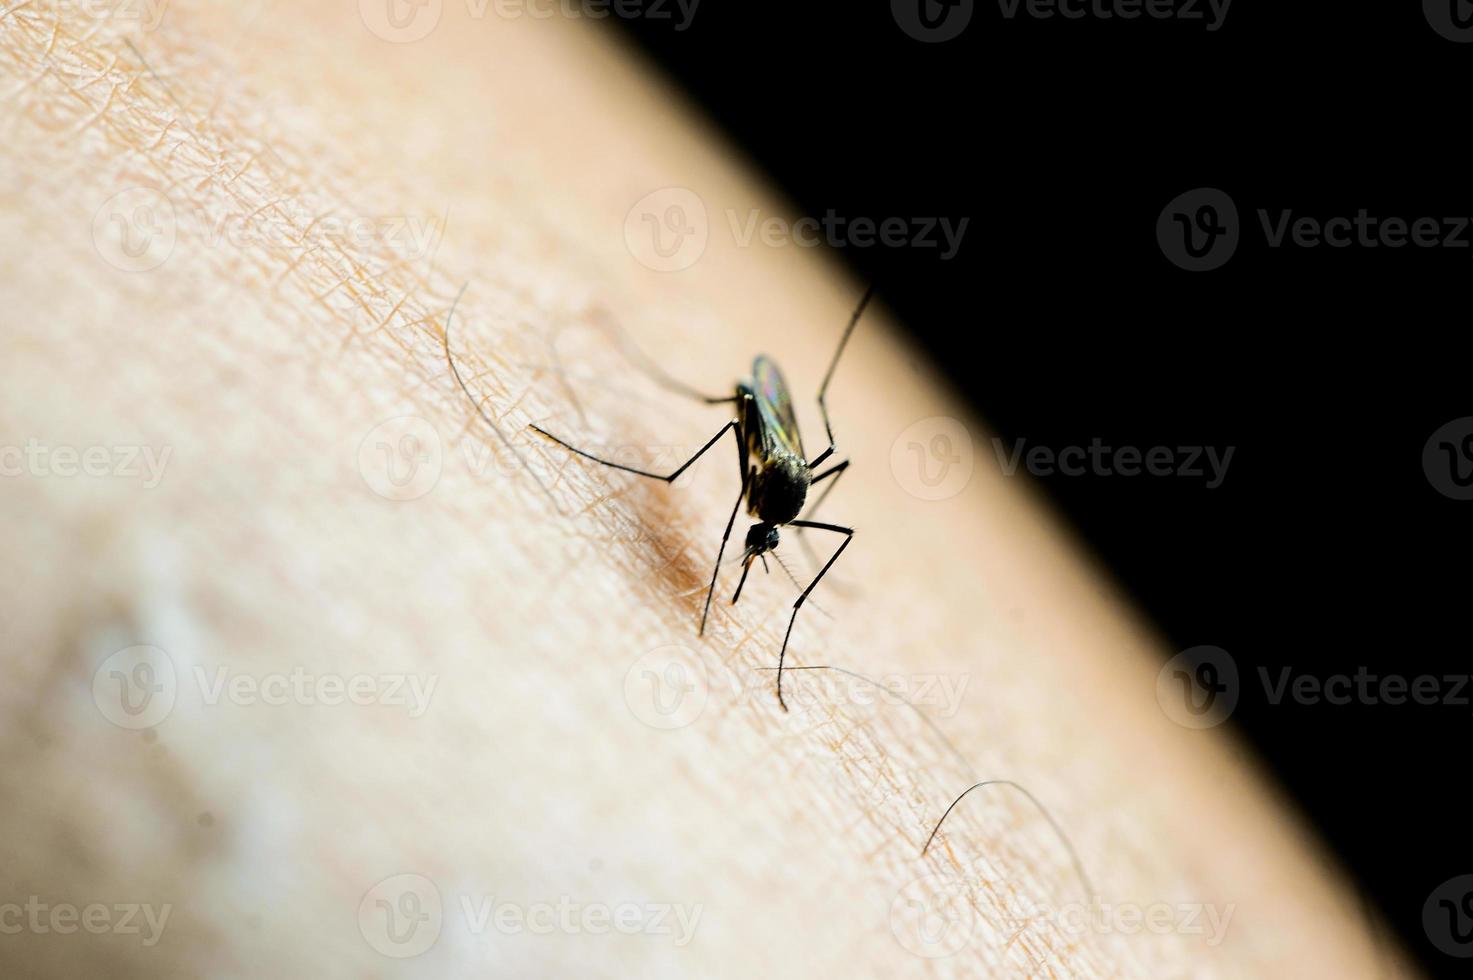 myggor i tropiska skogar suger blod på mänsklig hud. foto